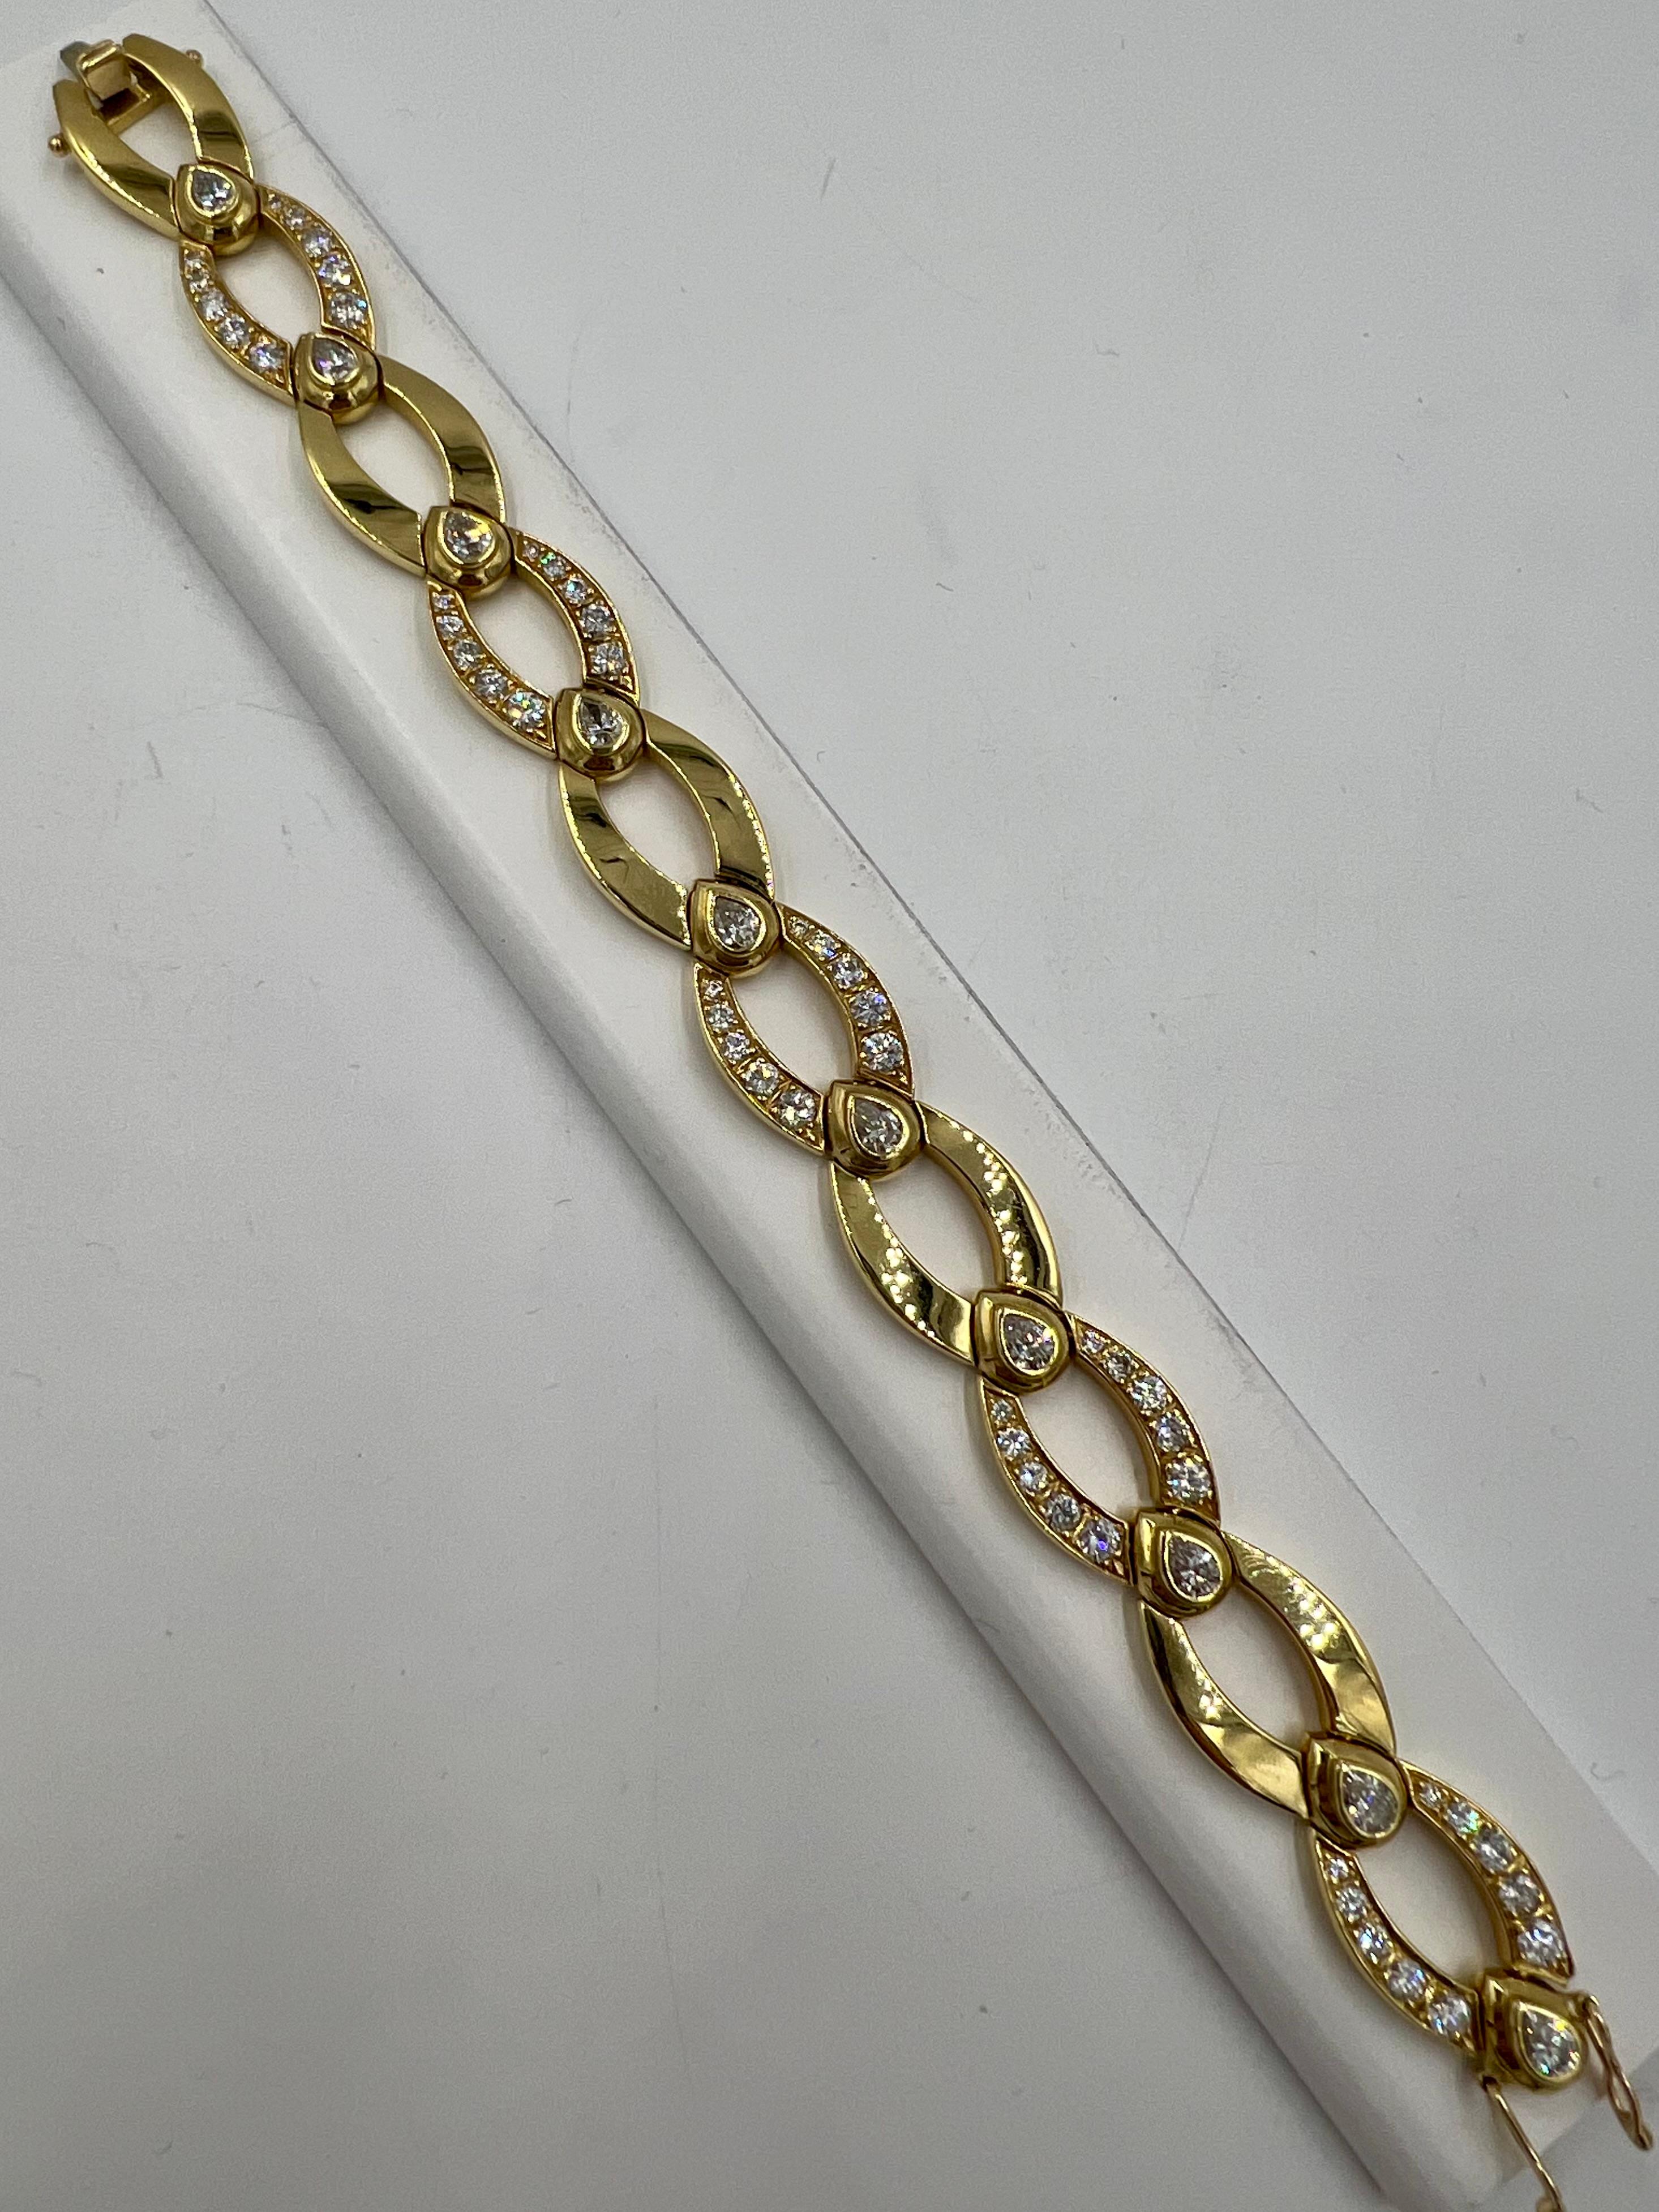 1970er Jahre Gelbgold-Gliederarmband mit birnenförmigen und runden Diamanten.

Die 1970er Jahre waren die Zeit der kühnen Modestatements und einzigartigen Schmuckdesigns. Ein solches Stück, das die Epoche verkörpert, ist das Gliederarmband aus